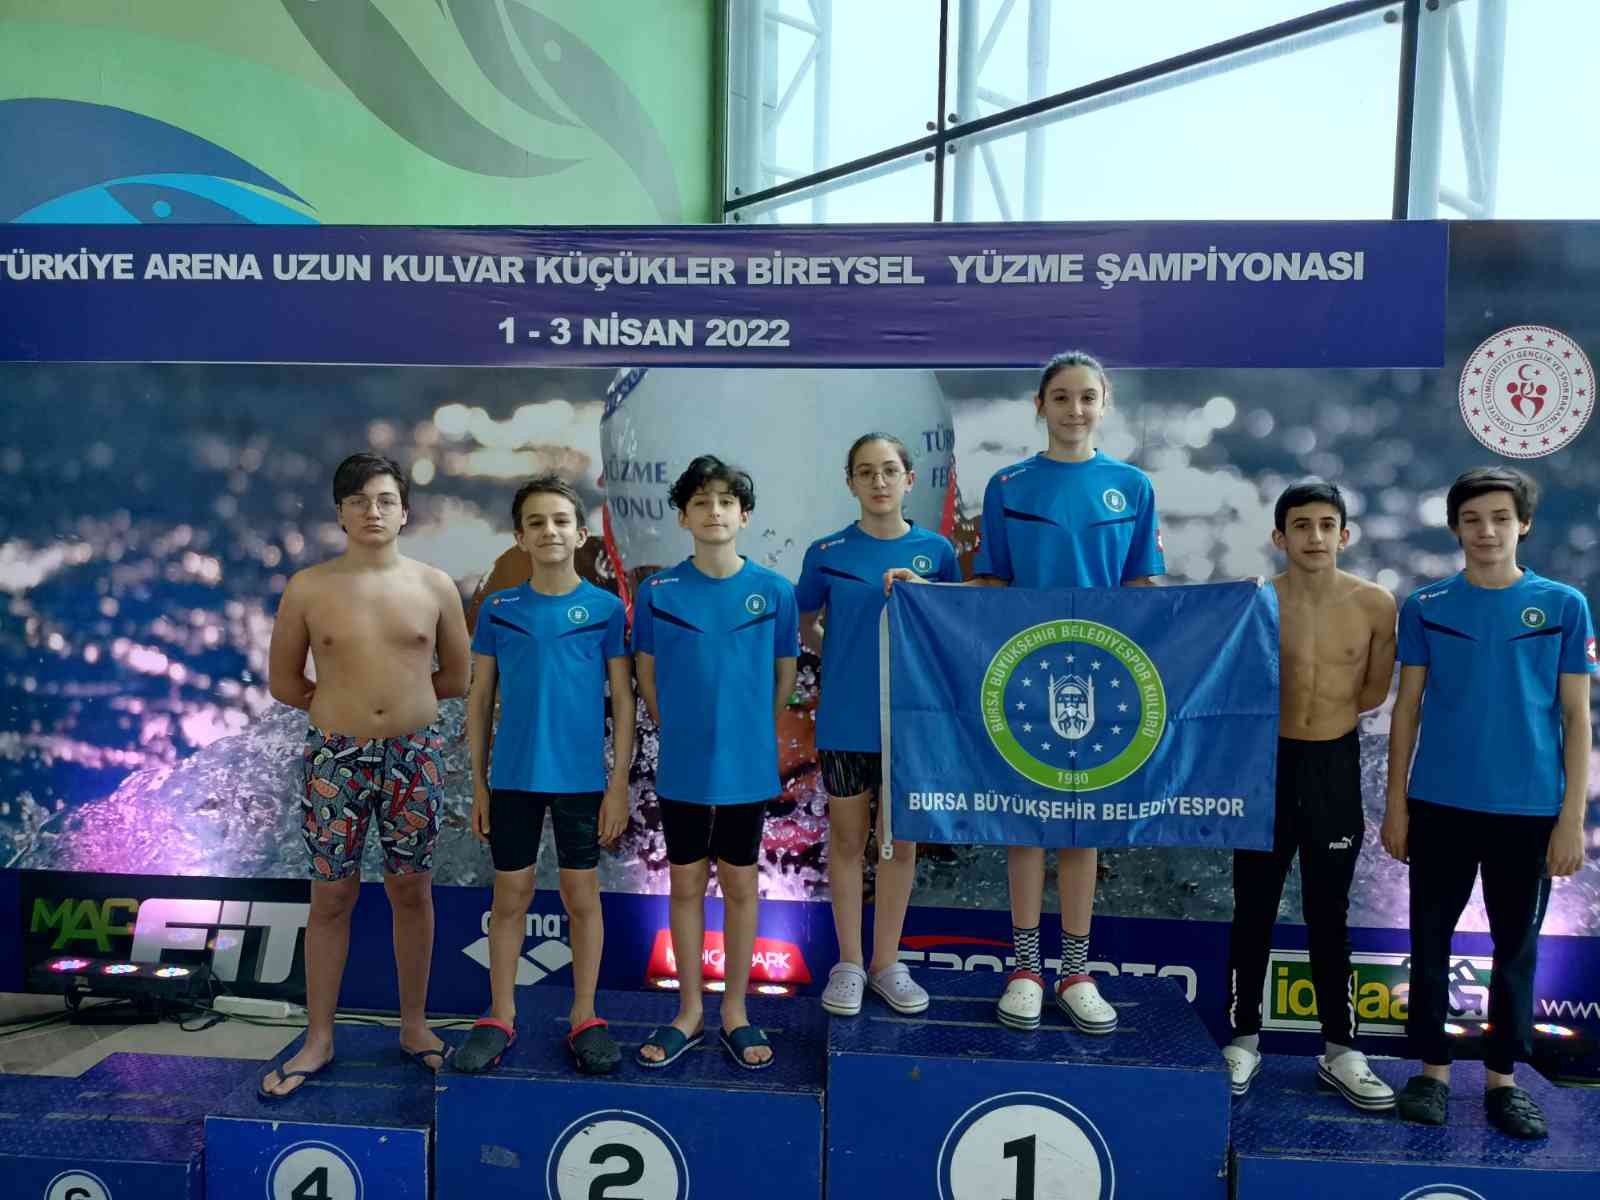 Bursa Büyükşehir Belediyespor Kulübü sporcuları, Trabzon’da gerçekleştirilen Uzun Kulvar Küçükler Bireysel Yüzme Şampiyonası’ndan da madalyasız ...